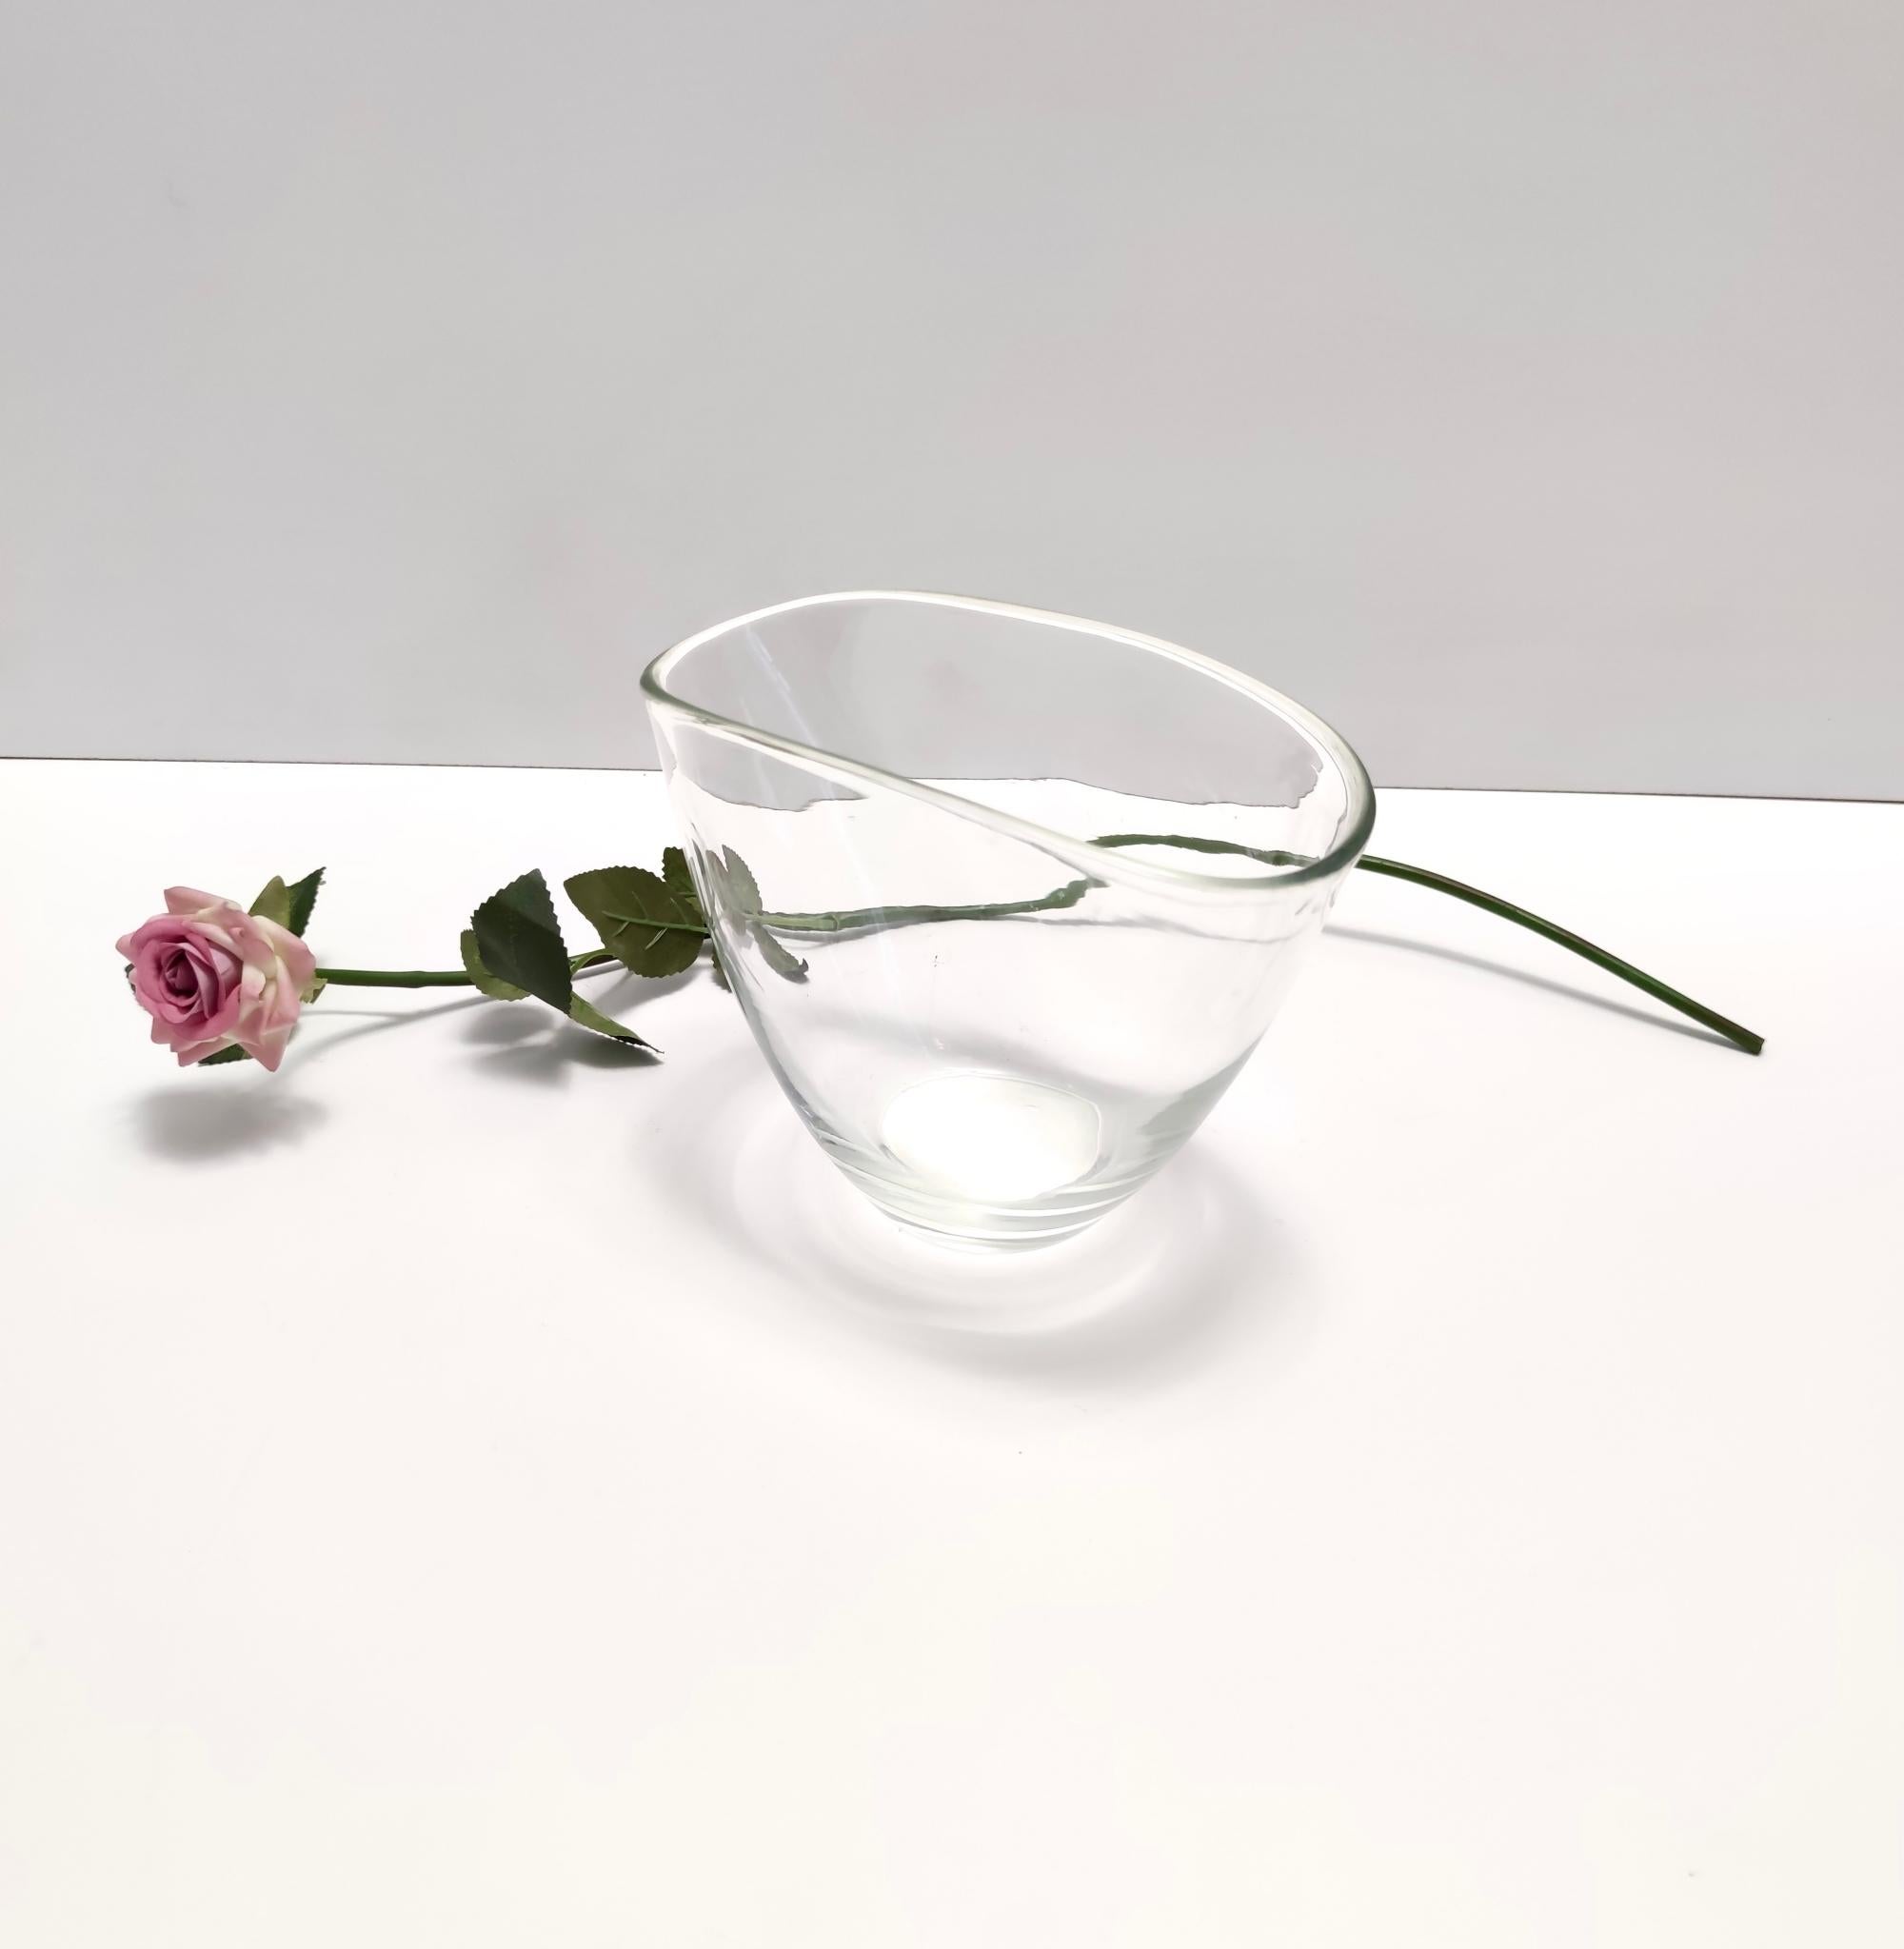 Hergestellt in Italien, 1950er Jahre. 
Dies ist eine elegante und unverzichtbare mundgeblasene Vase aus transparentem Murano-Glas.
Da es sich um ein Vintage-Stück handelt, kann es leichte Gebrauchsspuren aufweisen, aber es ist in einem